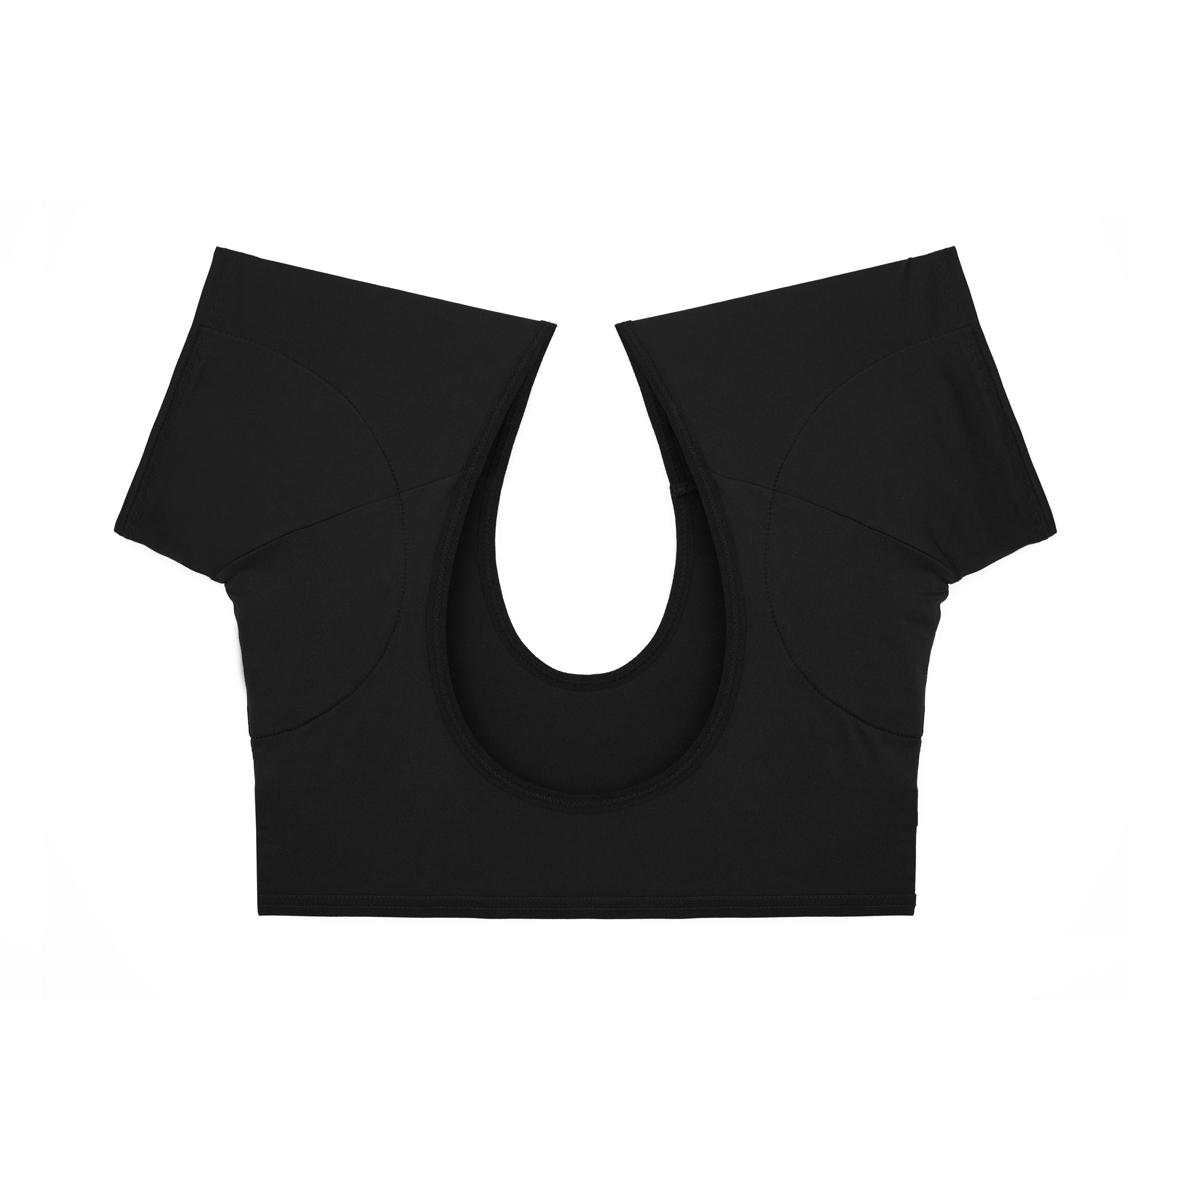 UNDERARM SWEAT PADS T-shirt Women Armpit Shape Reusable Sweat Pads Washable  NEW $13.99 - PicClick AU